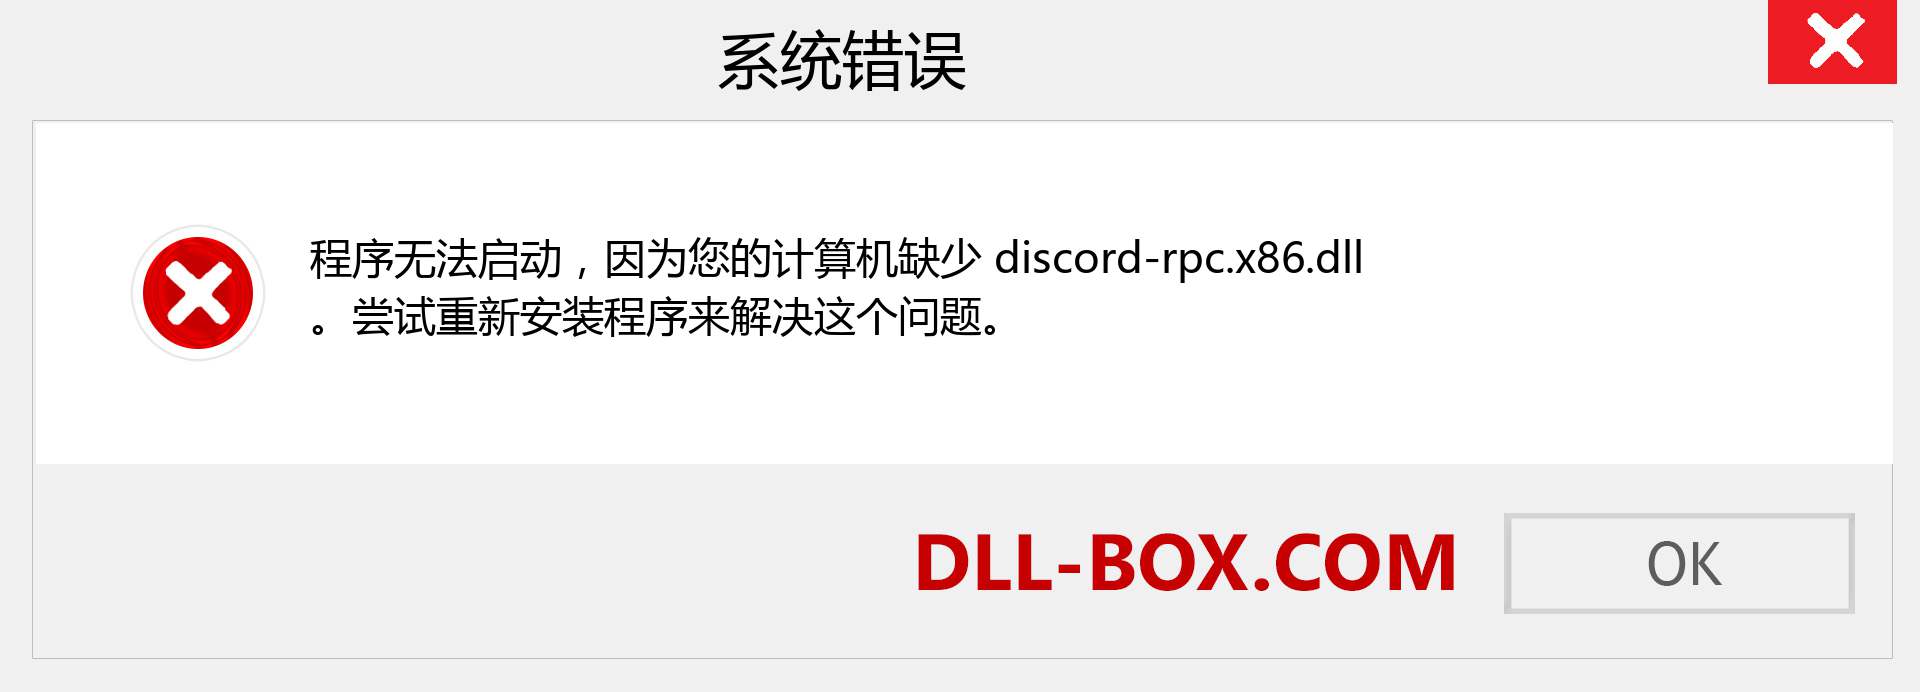 discord-rpc.x86.dll 文件丢失？。 适用于 Windows 7、8、10 的下载 - 修复 Windows、照片、图像上的 discord-rpc.x86 dll 丢失错误